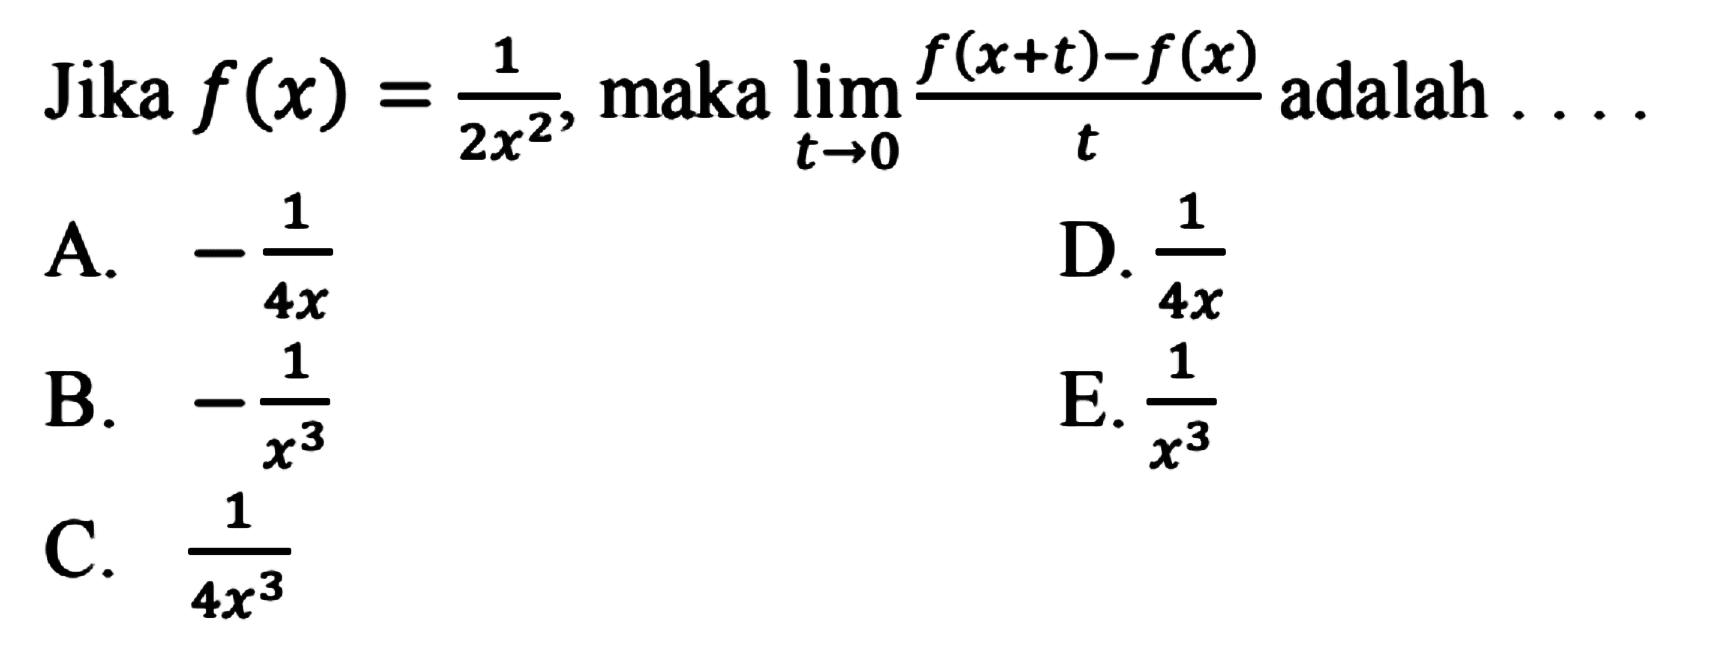 Jika f(x)=1/(2x^2), maka lim t->0 (f(x+t)-f(x))/t adalah . . . .